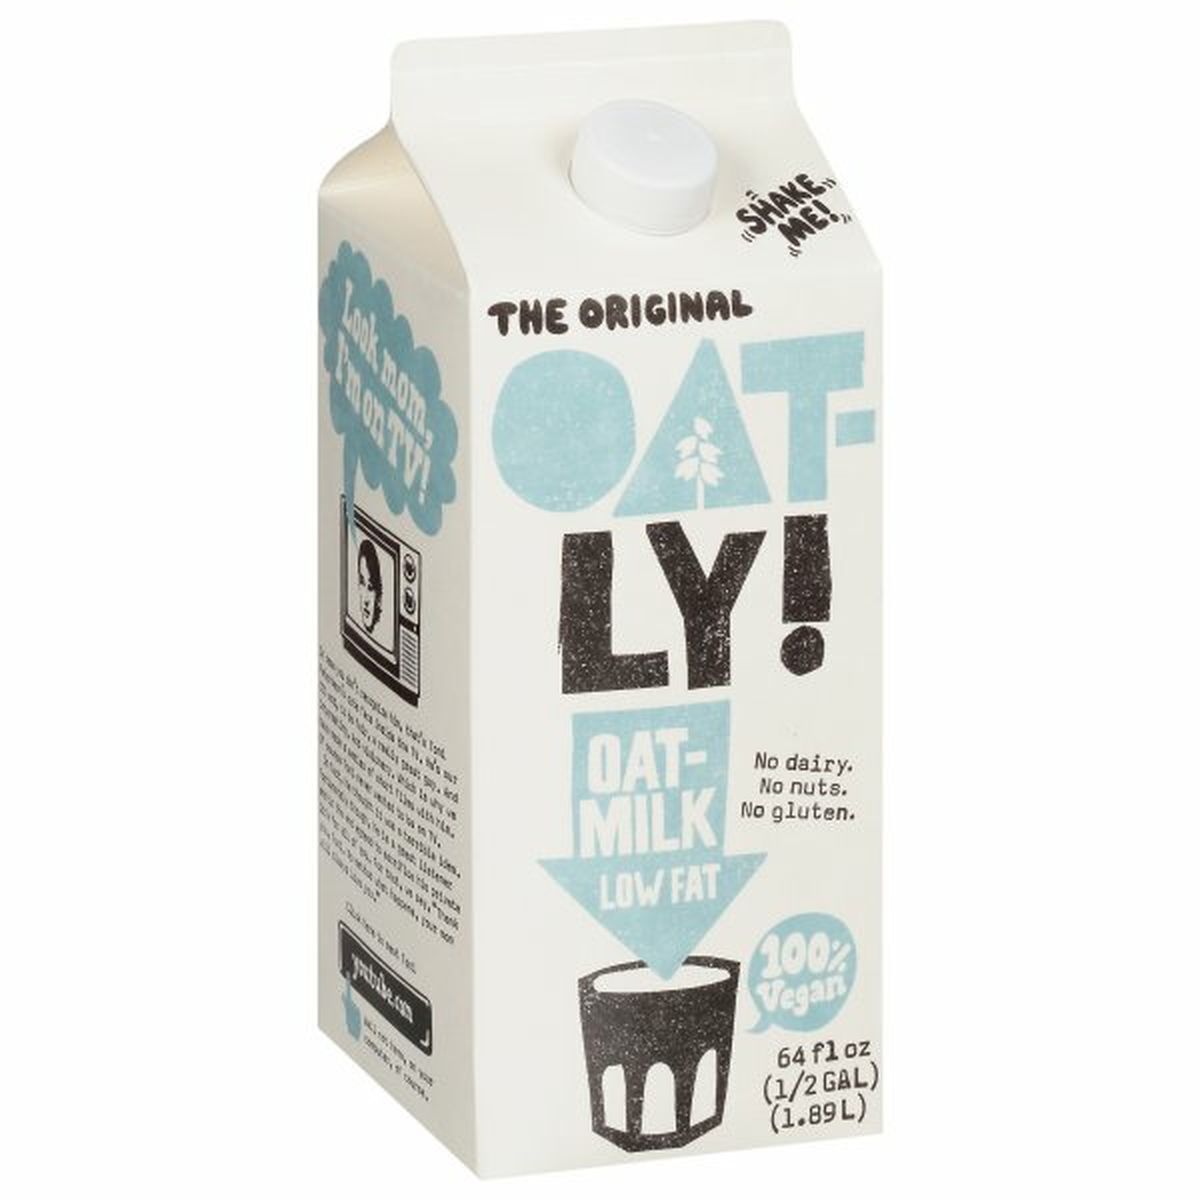 Calories in Oatly Oat-Milk, Low Fat